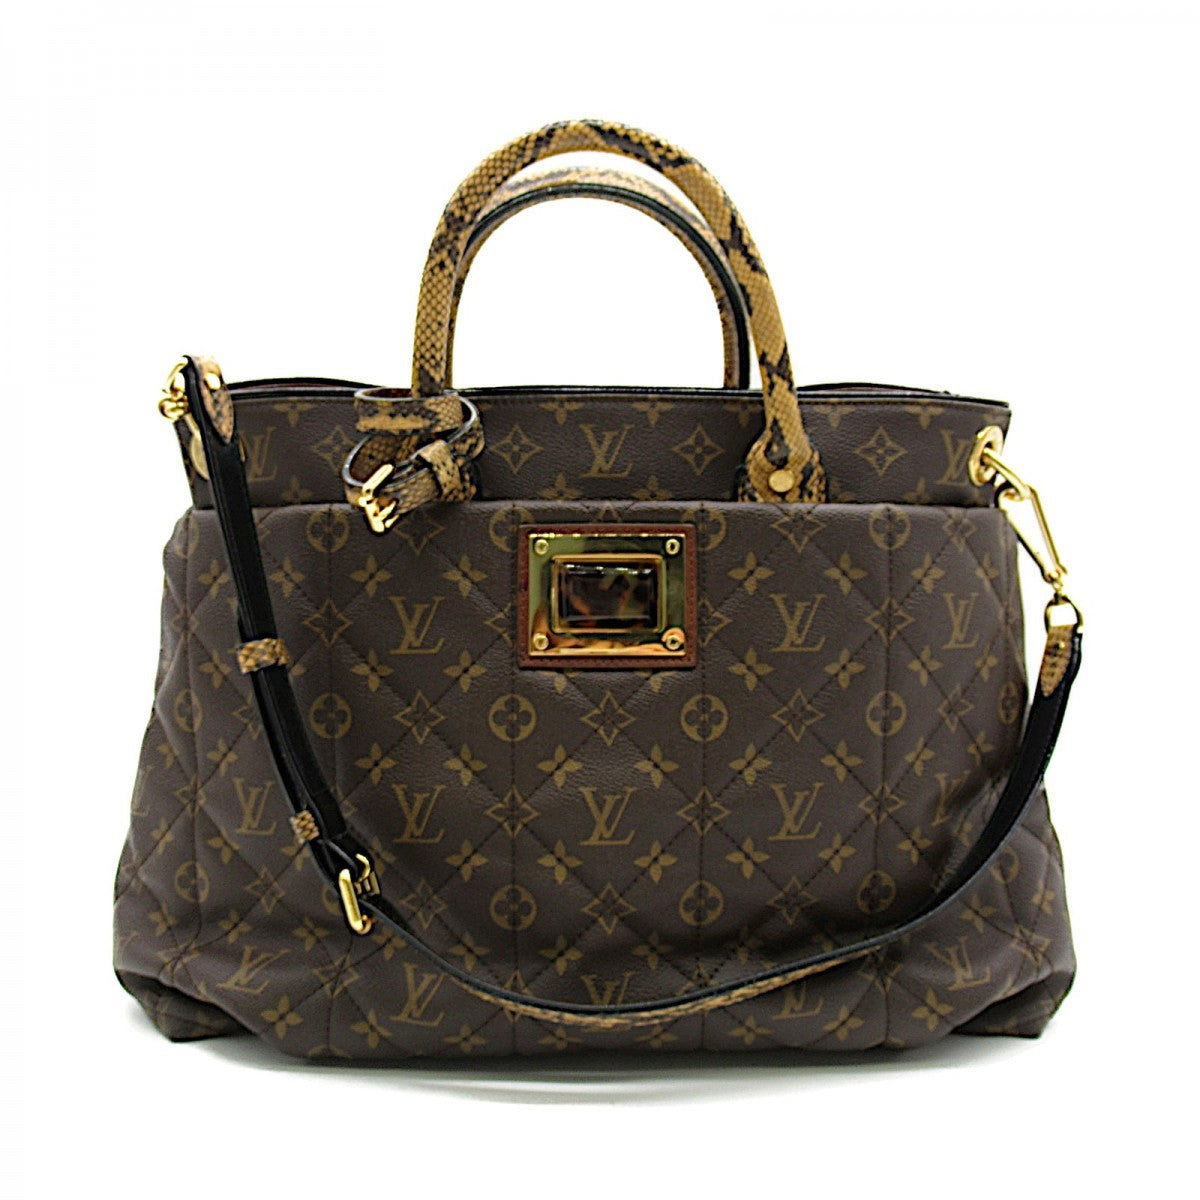 Louis Vuitton Monogram Etoile GM Canvas Handbag M40402 in Excellent condition